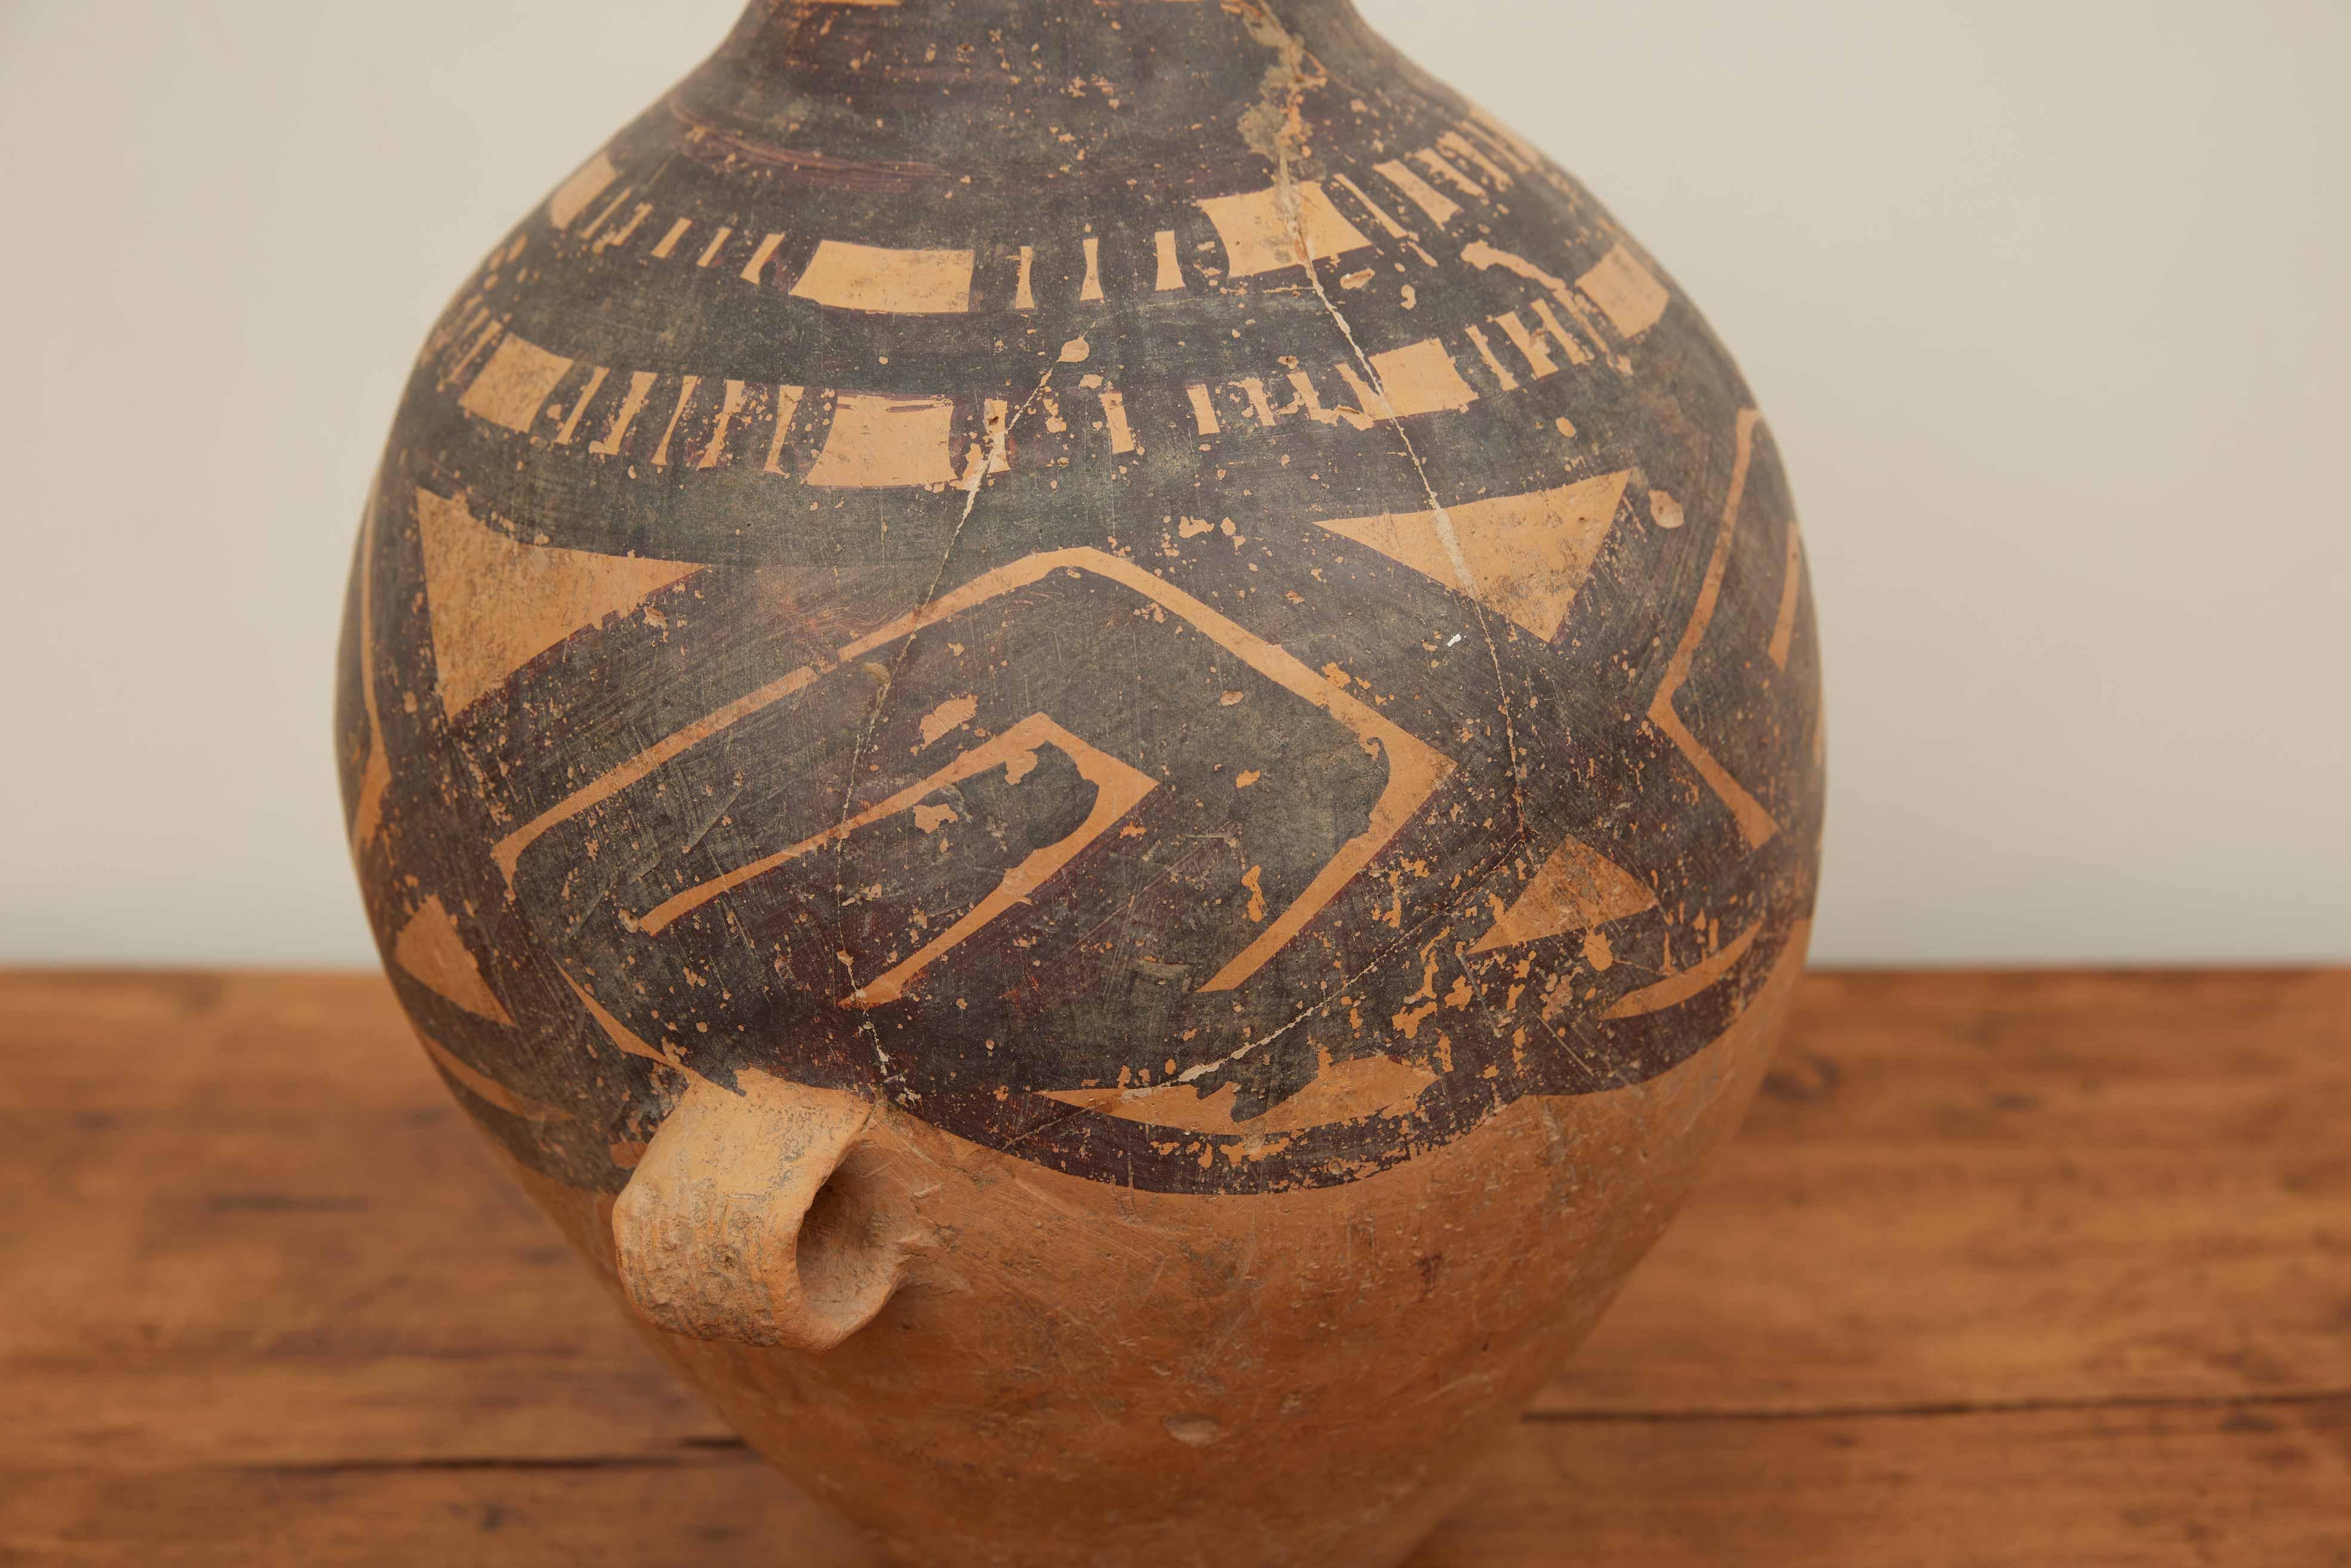 Poterie chinoise néolithique Provenance Dr Philip Gould (1922-2020)

Le vase a une provenance distinguée, ayant fait partie de la collection du Dr Philip Gould (1922-2020), un professeur estimé de Columbia et un collectionneur avide passionné